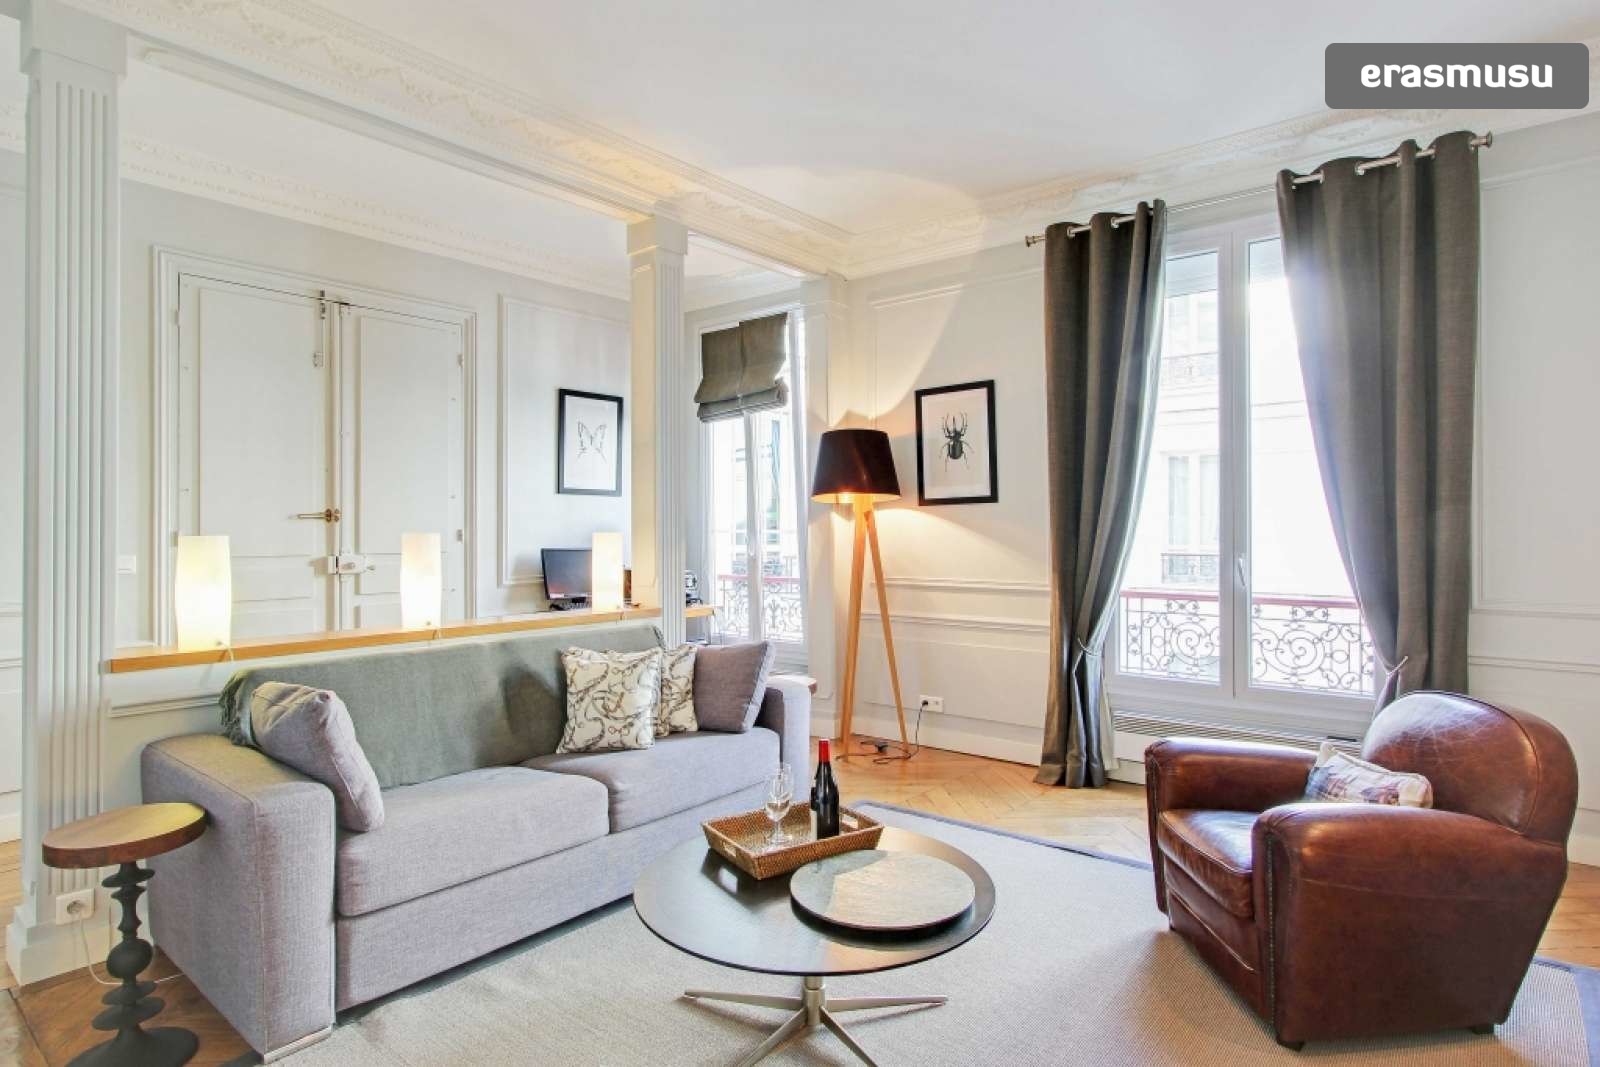 2 Bedroom Apartment For Rent In Paris 16th Arrondissement Flat Rent Paris